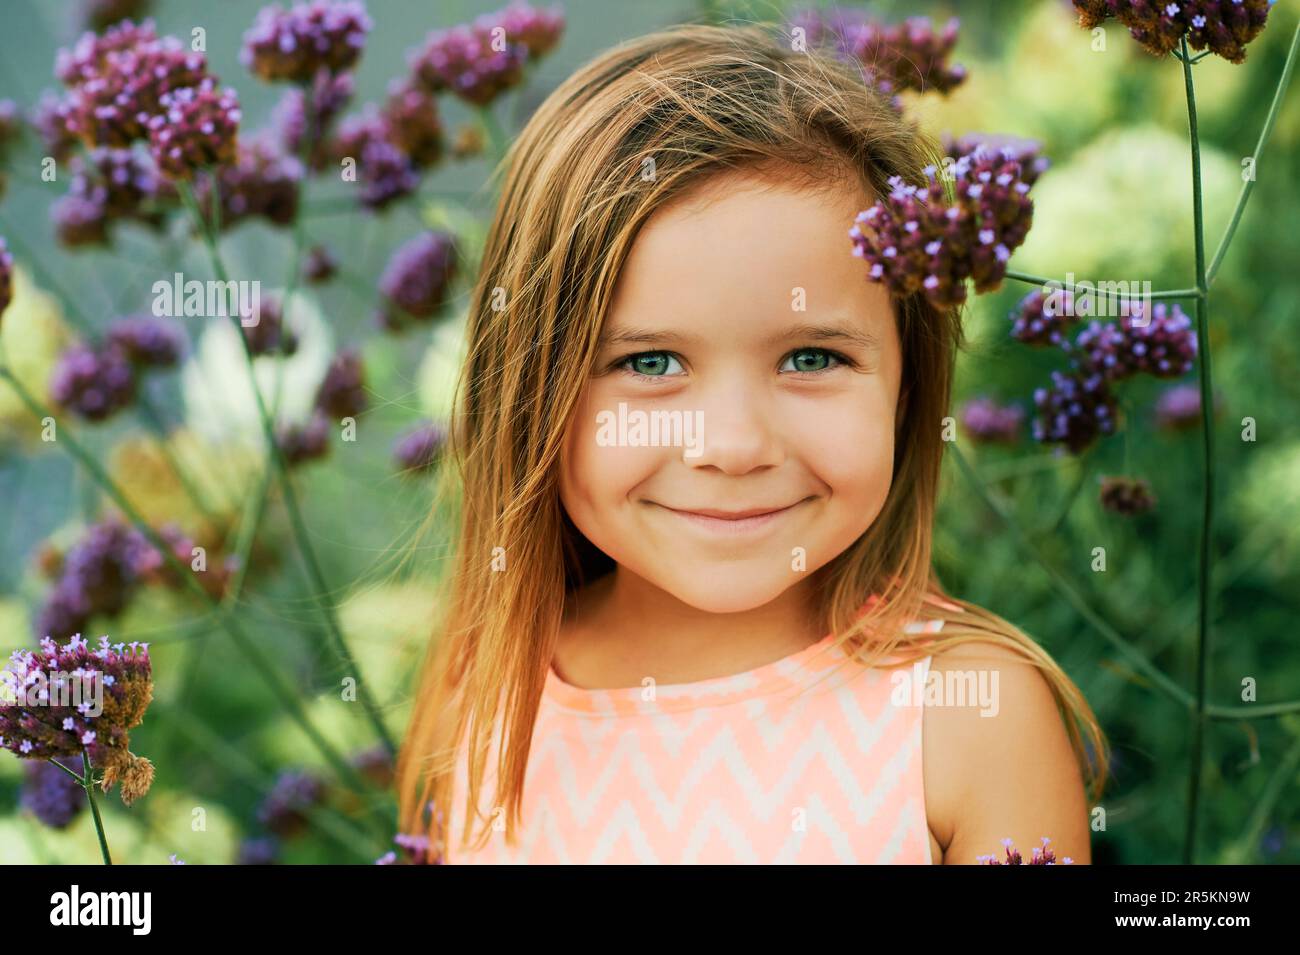 Portrait d'été extérieur d'une adorable petite fille de 3 ou 4 ans, posant dans des fleurs violettes Banque D'Images